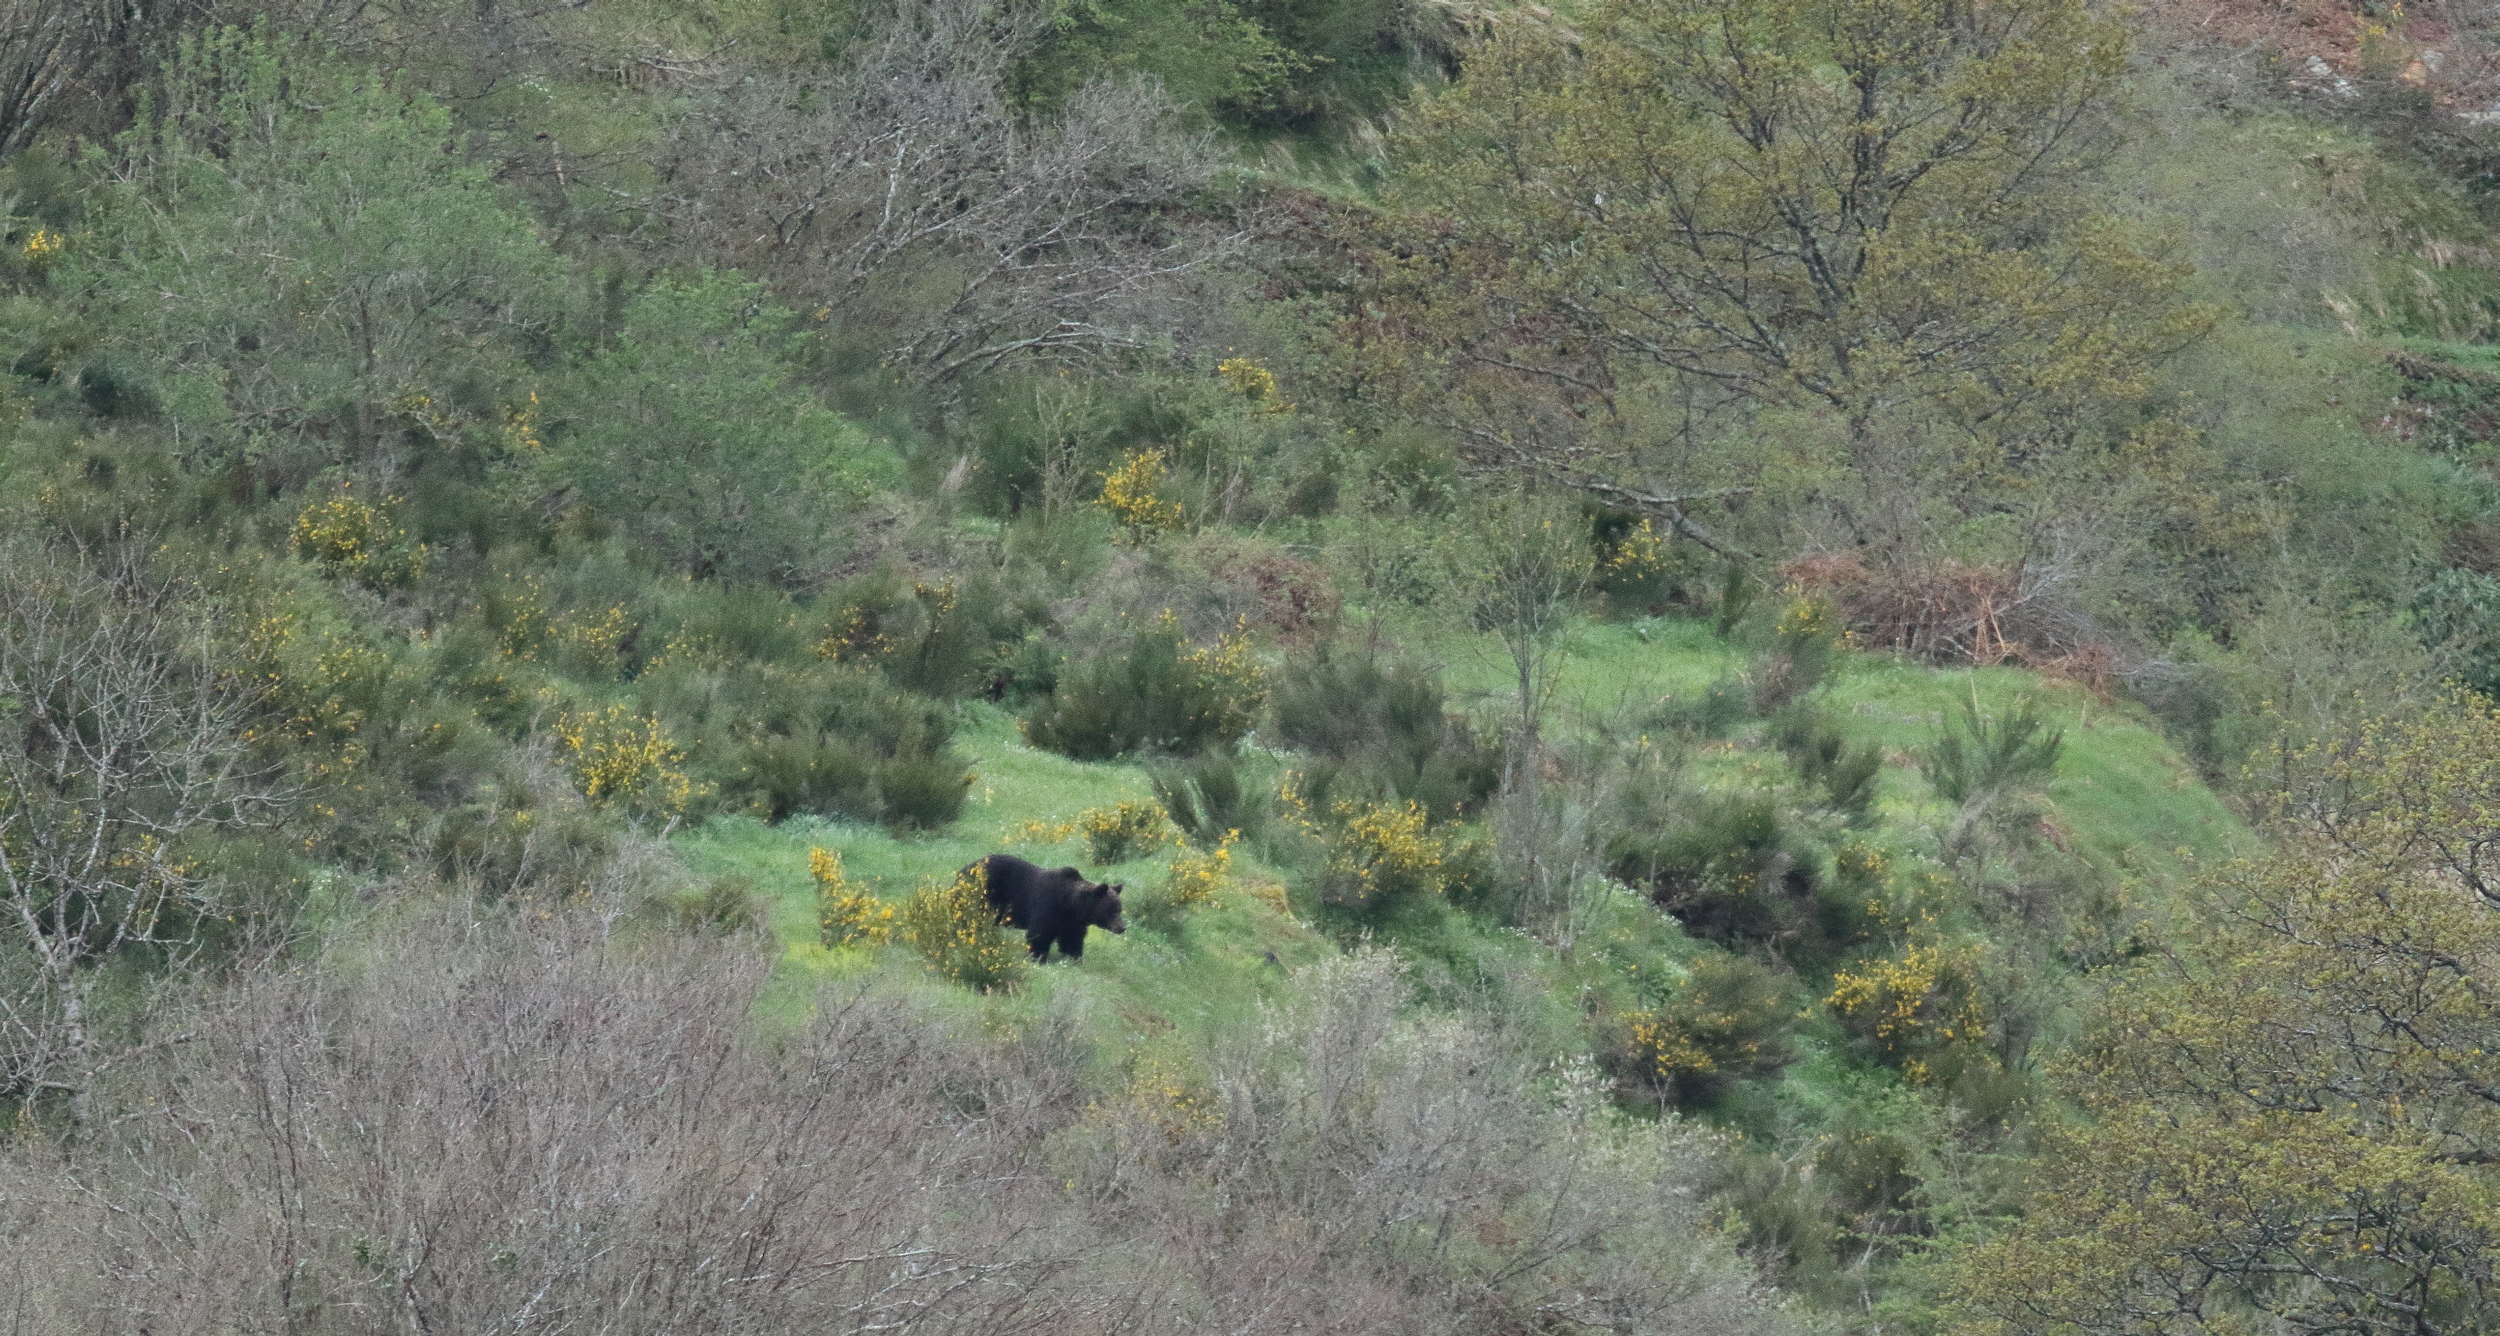 Un tres grand male, presque noir, est descend visiter les prairies a vache.